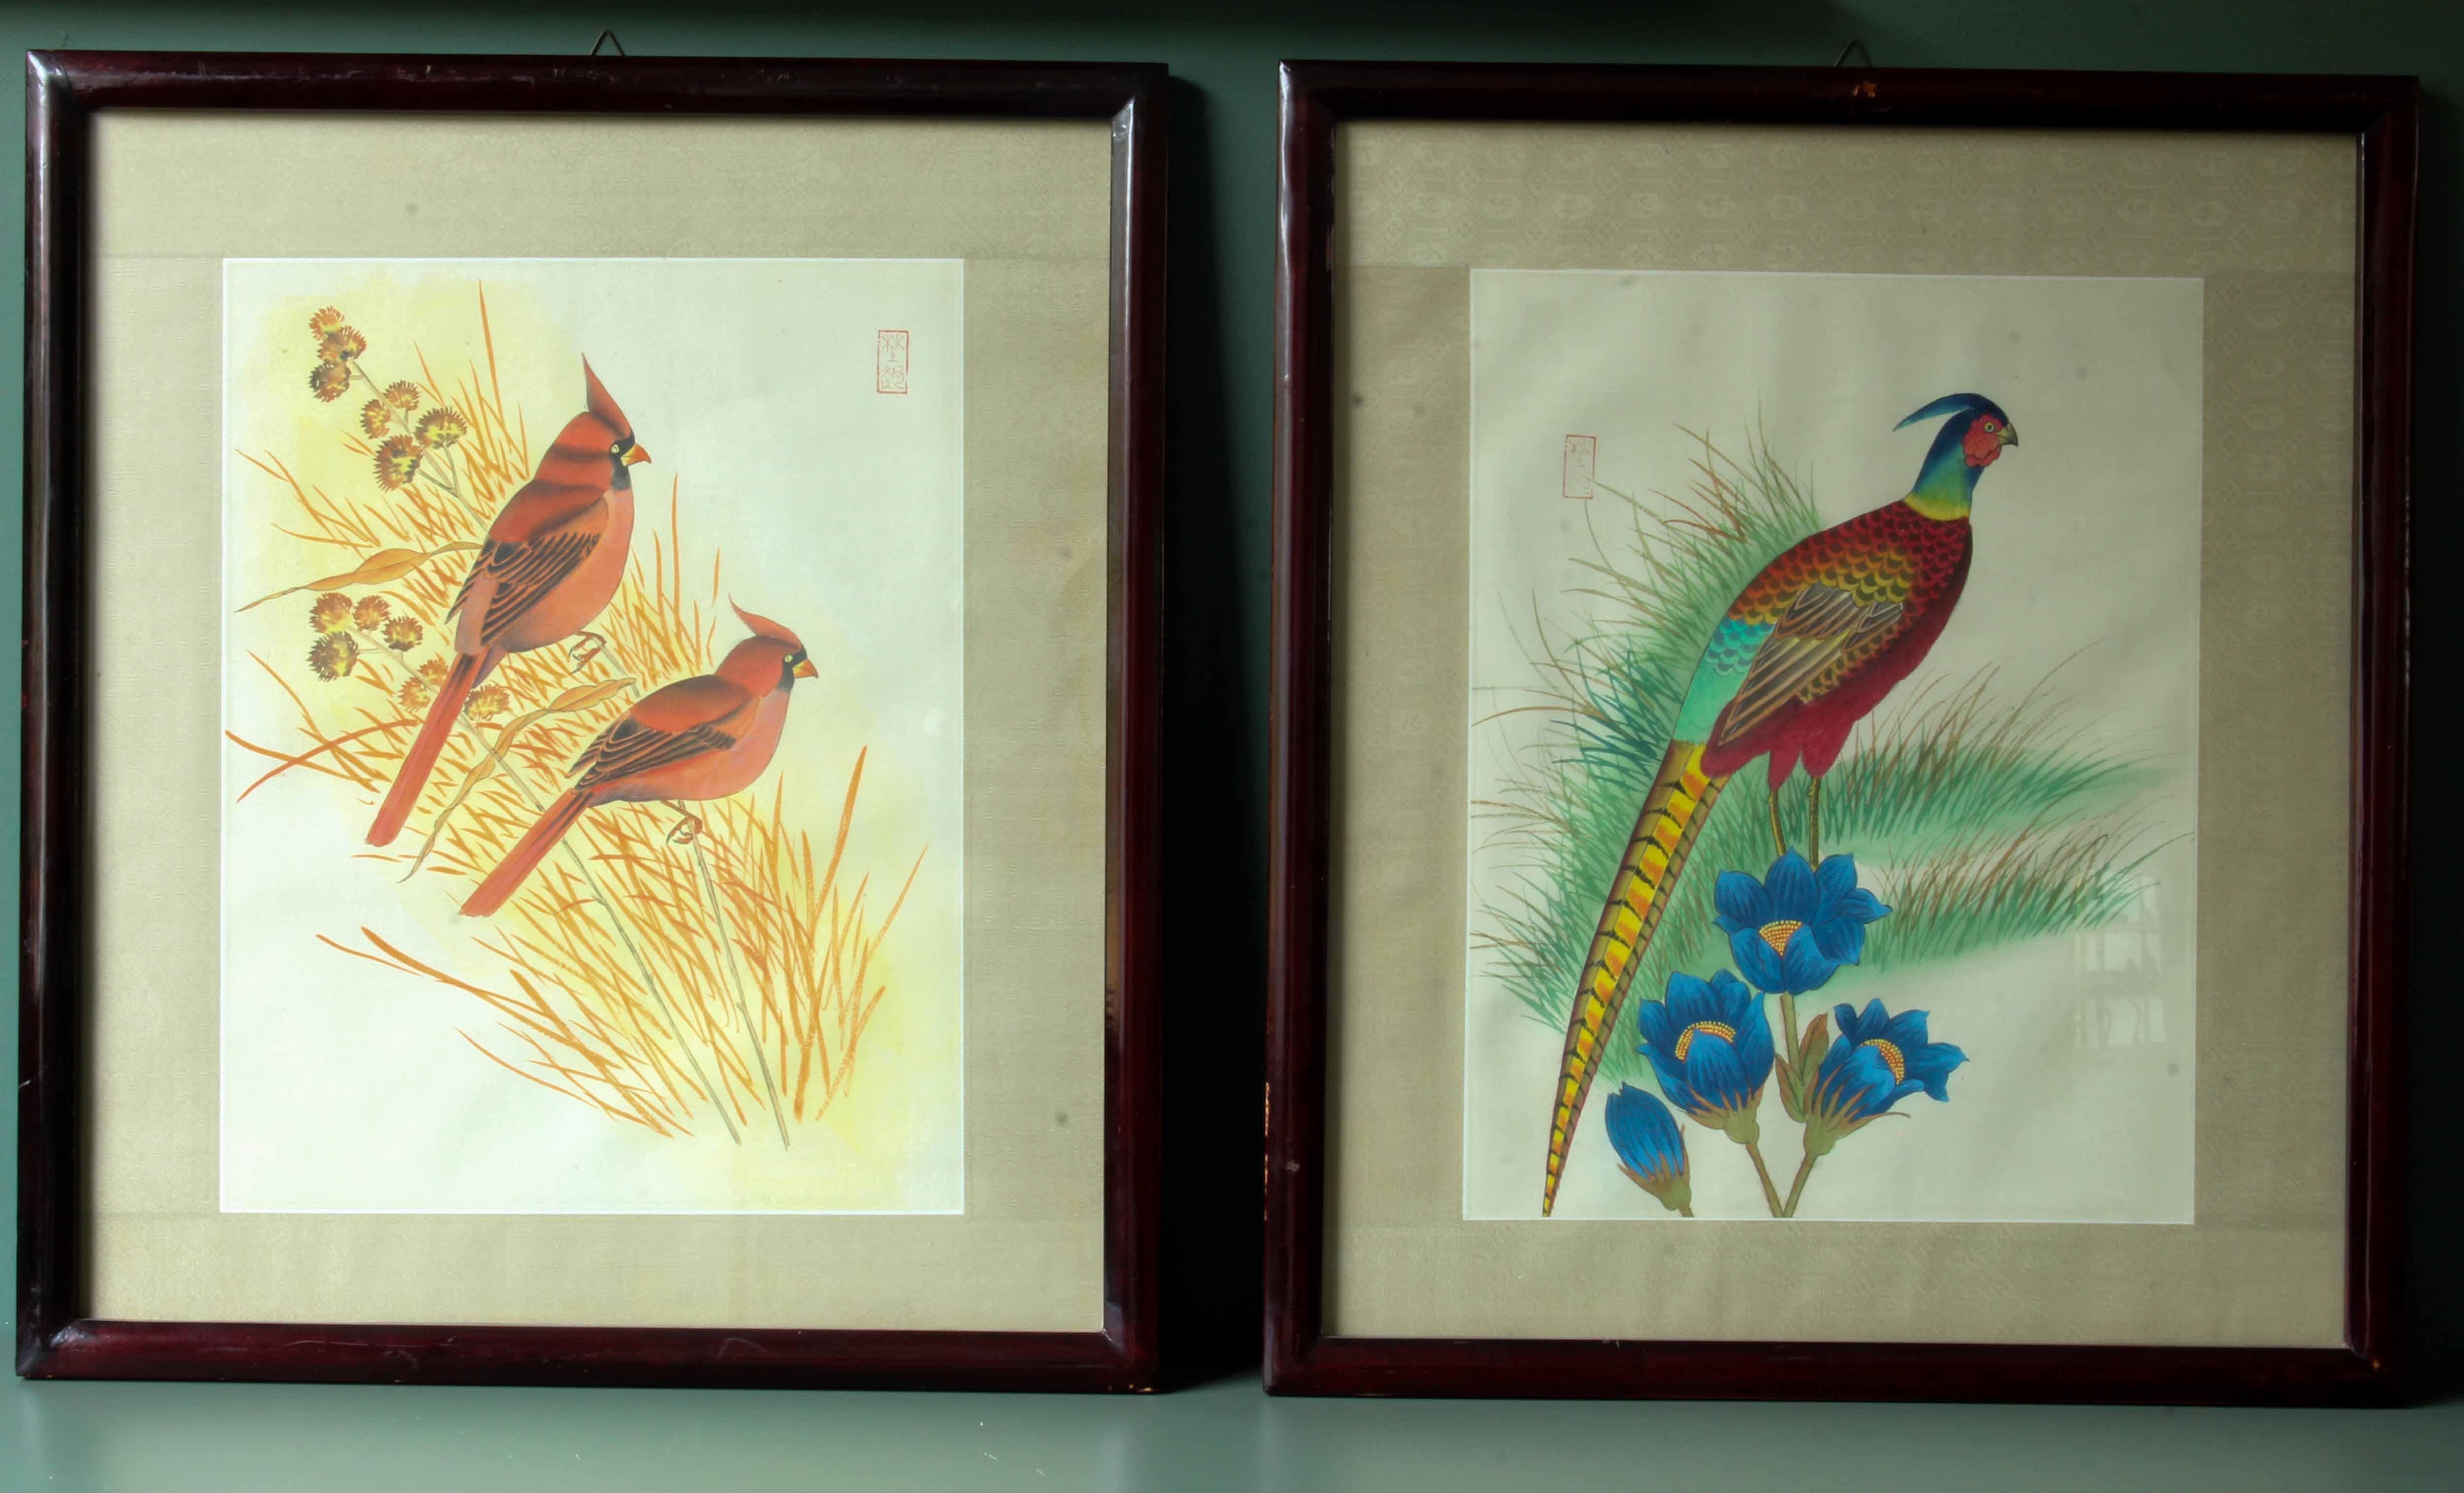 Peintures chinoises anciennes sur papier de riz. Cet ensemble unique de 2 magnifiques peintures d'oiseaux sur papier de riz provient d'un domaine très chic de Ventimiglia (Italie), vers les années 1910. Ils sont encadrés dans des cadres en bois